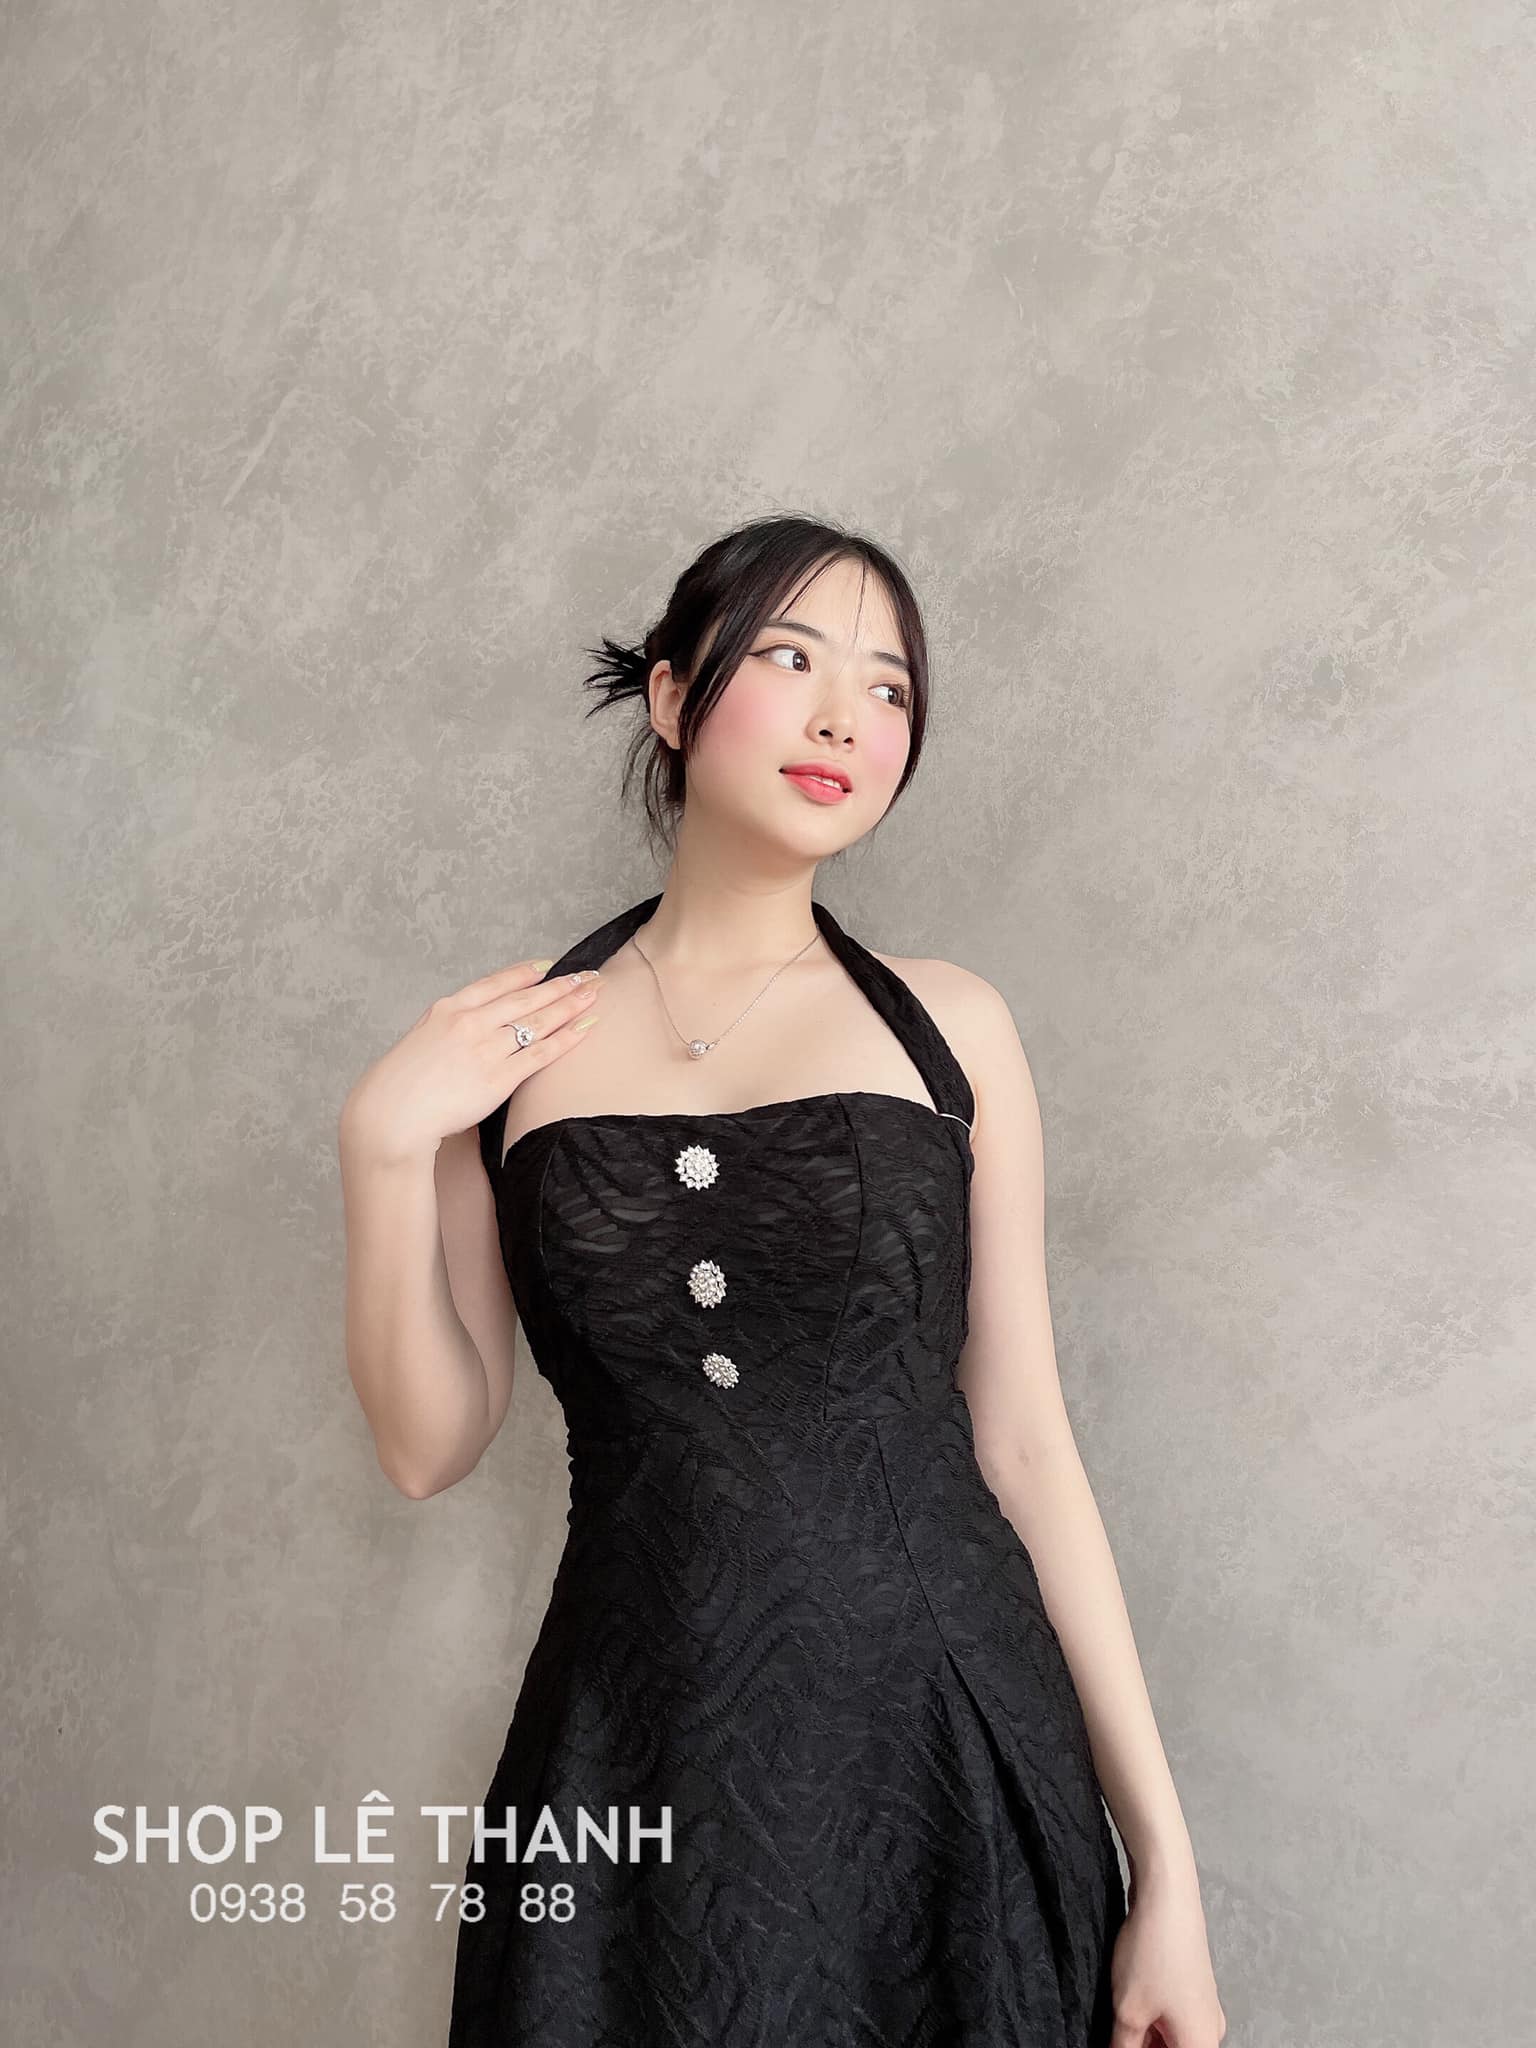 Top 9 Shop quần áo nữ đẹp, giá rẻ nhất ở Cần Thơ -  Shop Lê Thanh